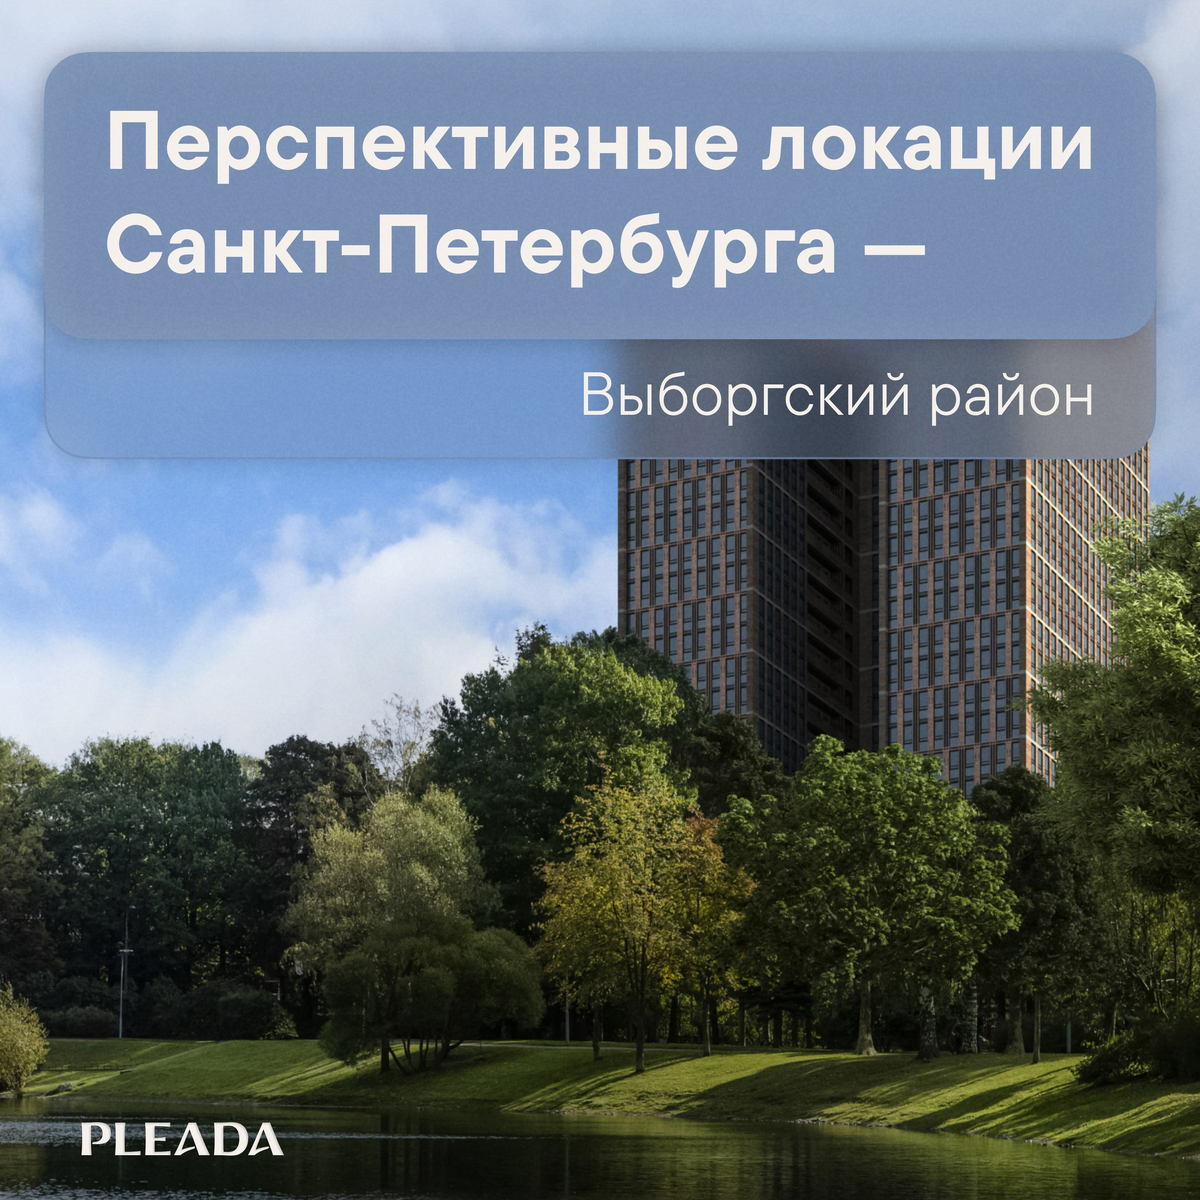 Выборгский район, один из самых больших районов по площади, расположен в северной части Санкт-Петербурга.